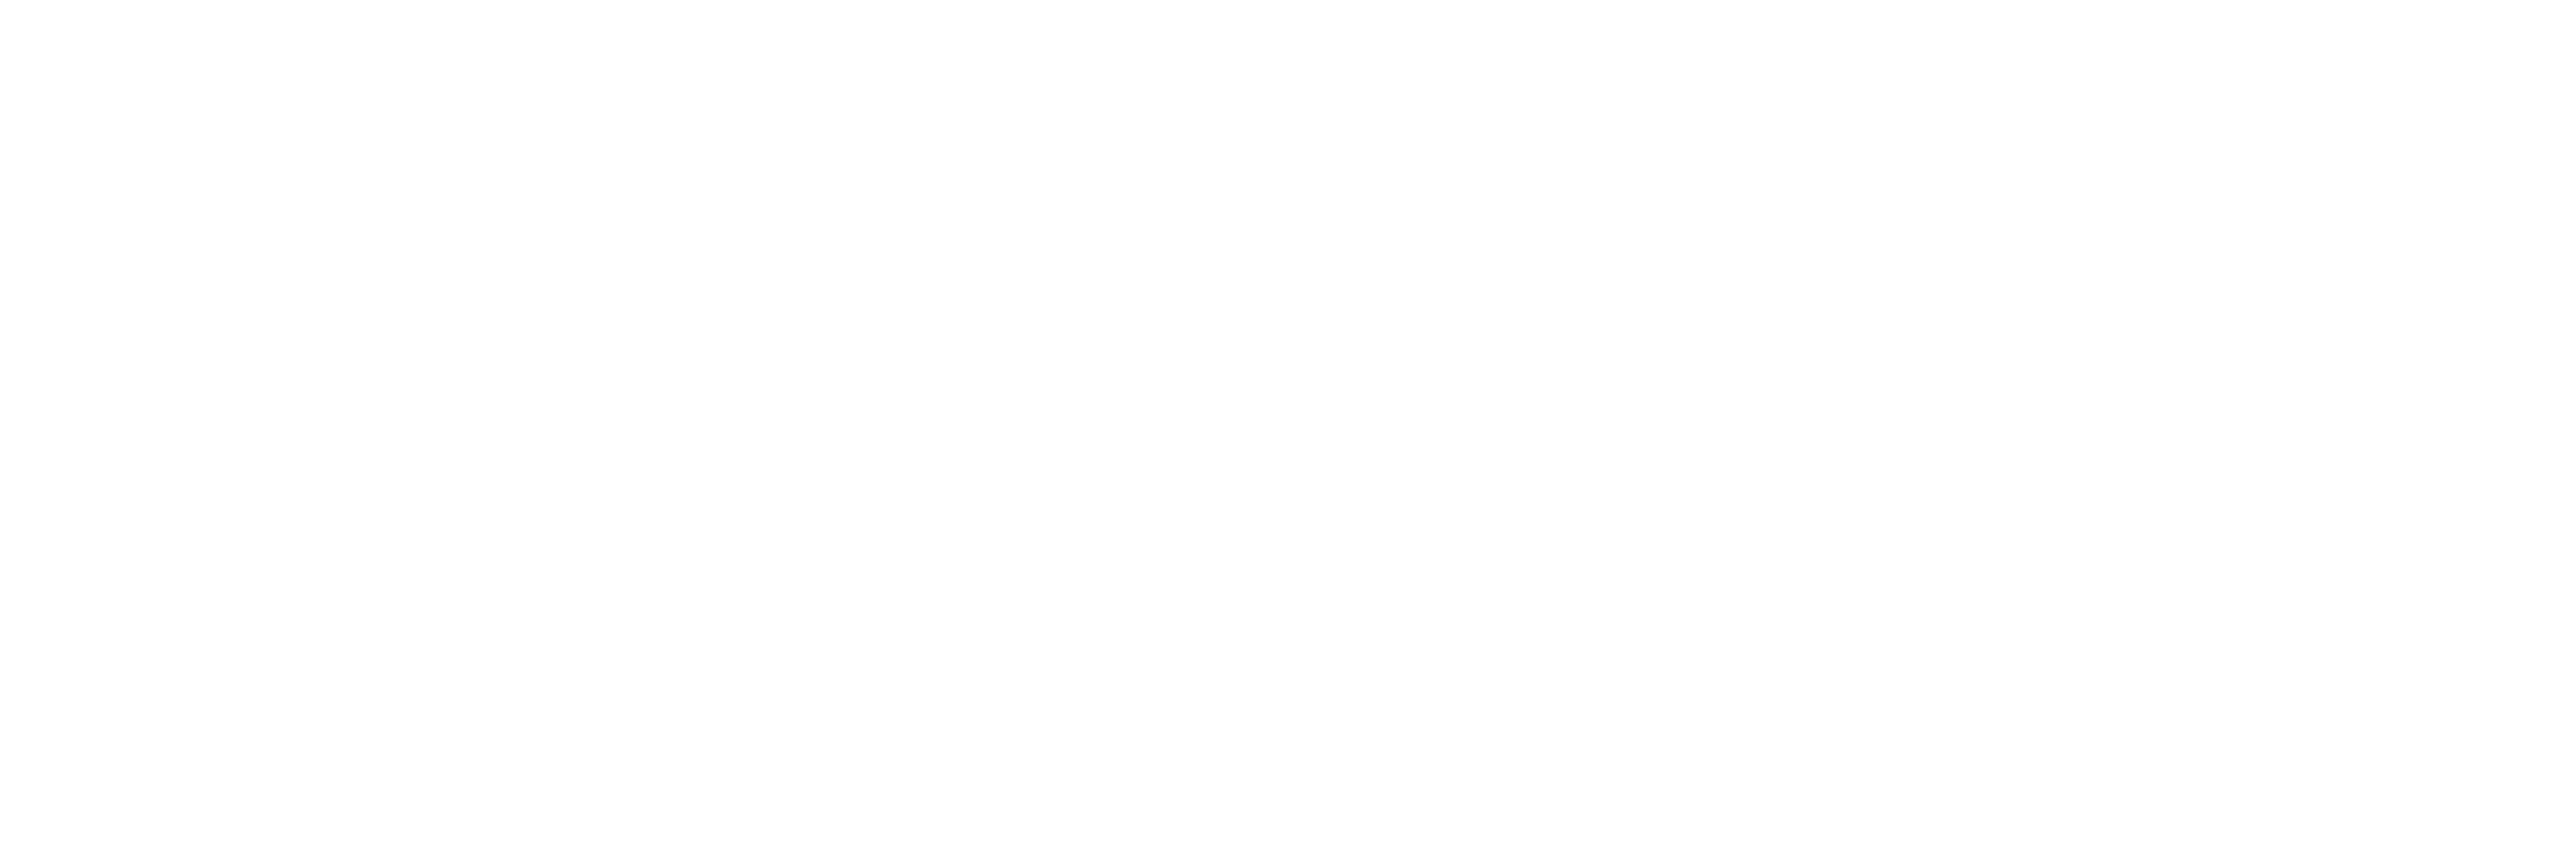 Kalan Hubbard White version logo